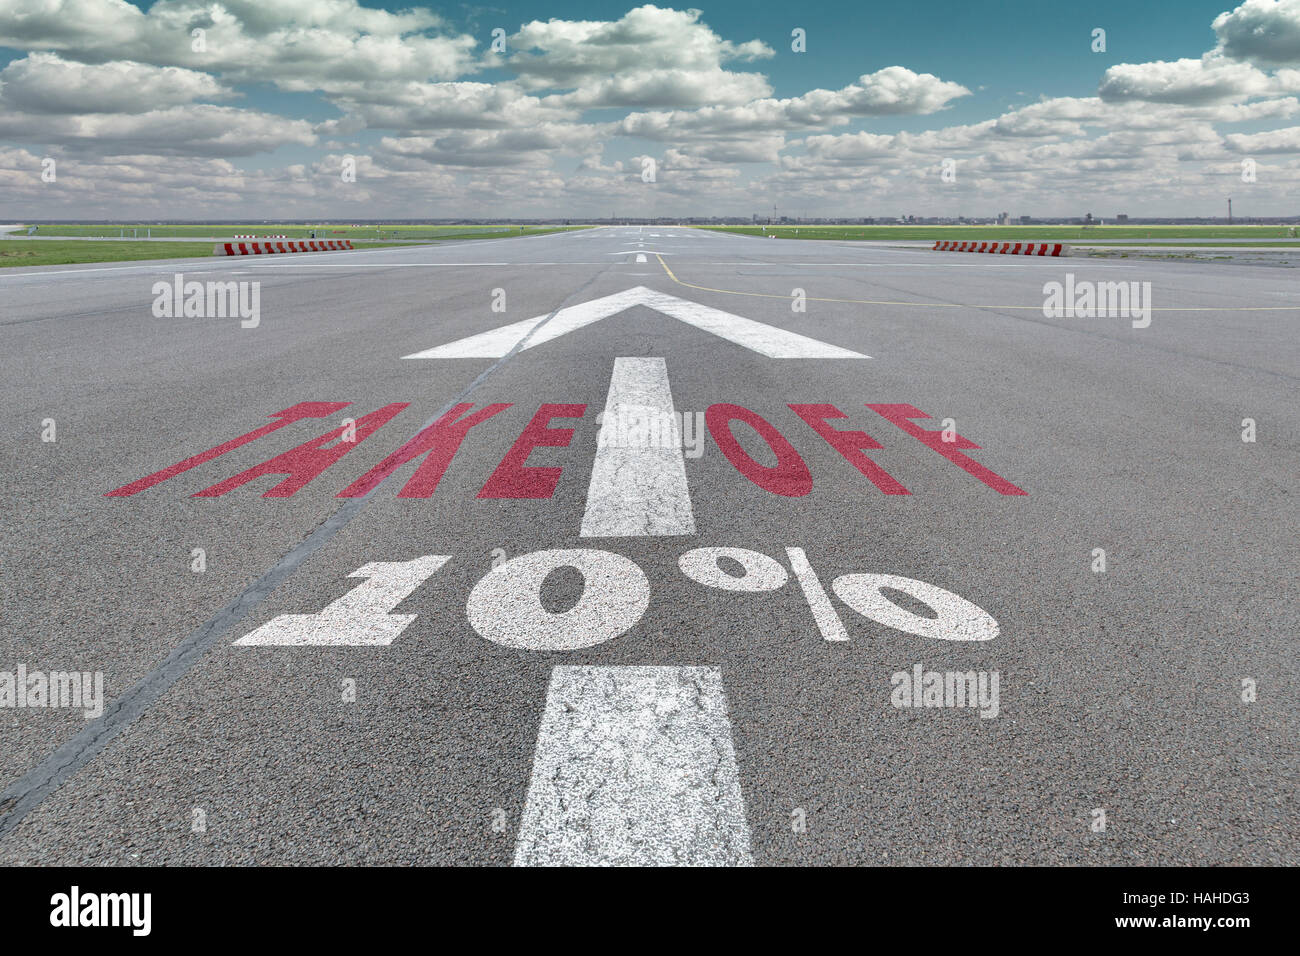 Start-und Landebahn des Flughafens mit Pfeil Leitlinie, ausziehen und 10 Prozent-Zeichen gedruckt auf dem asphalt Stockfoto